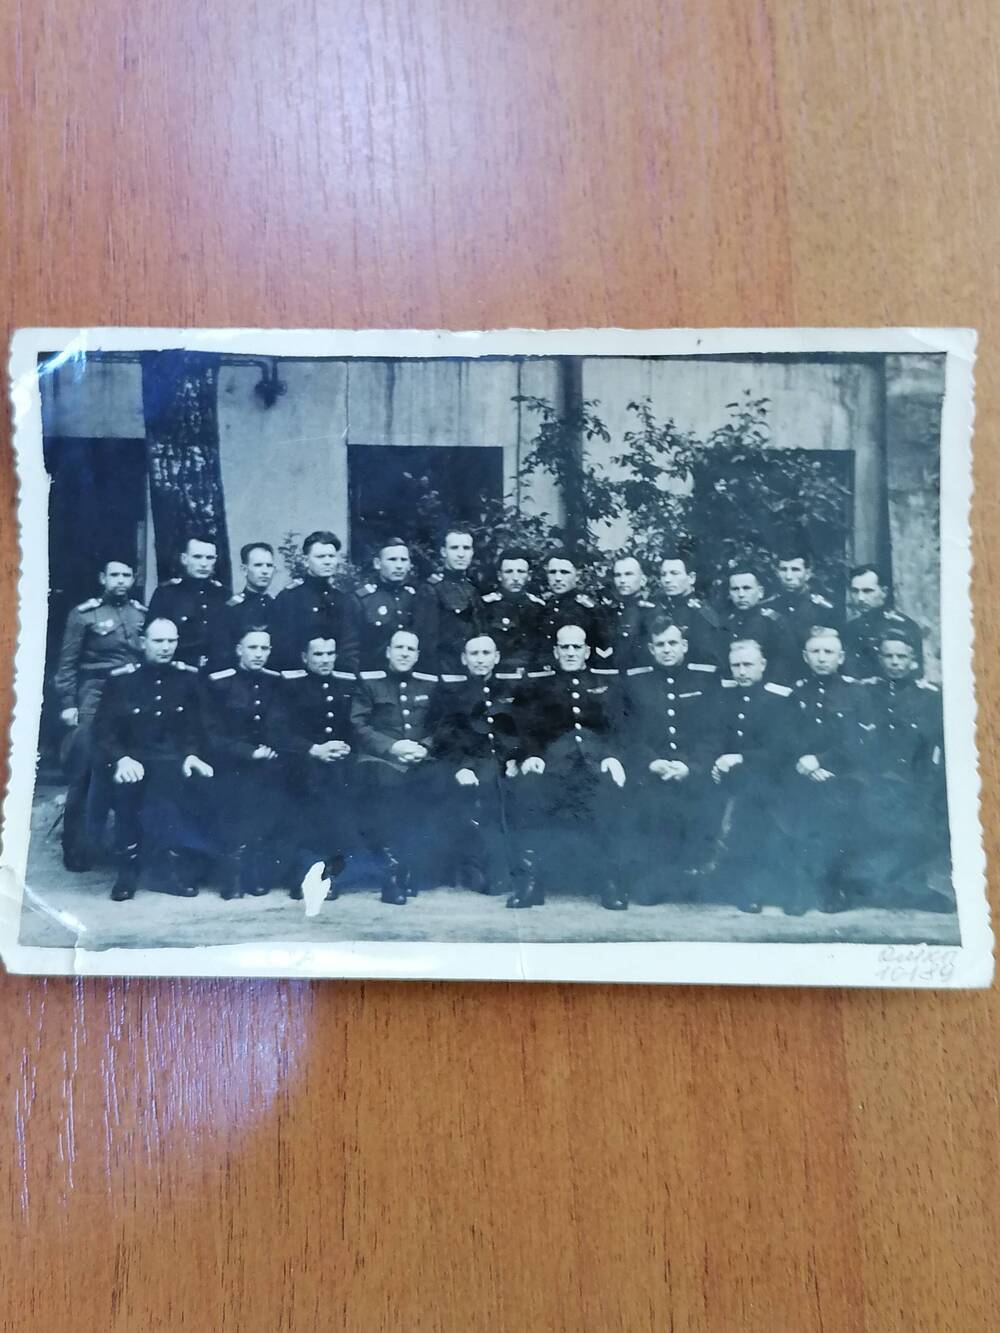 Фото глянцевое, черно-белое, групповое г.Вильнюс высшая партийная школа, 4-я стрелковая дивизия МГБ СССР